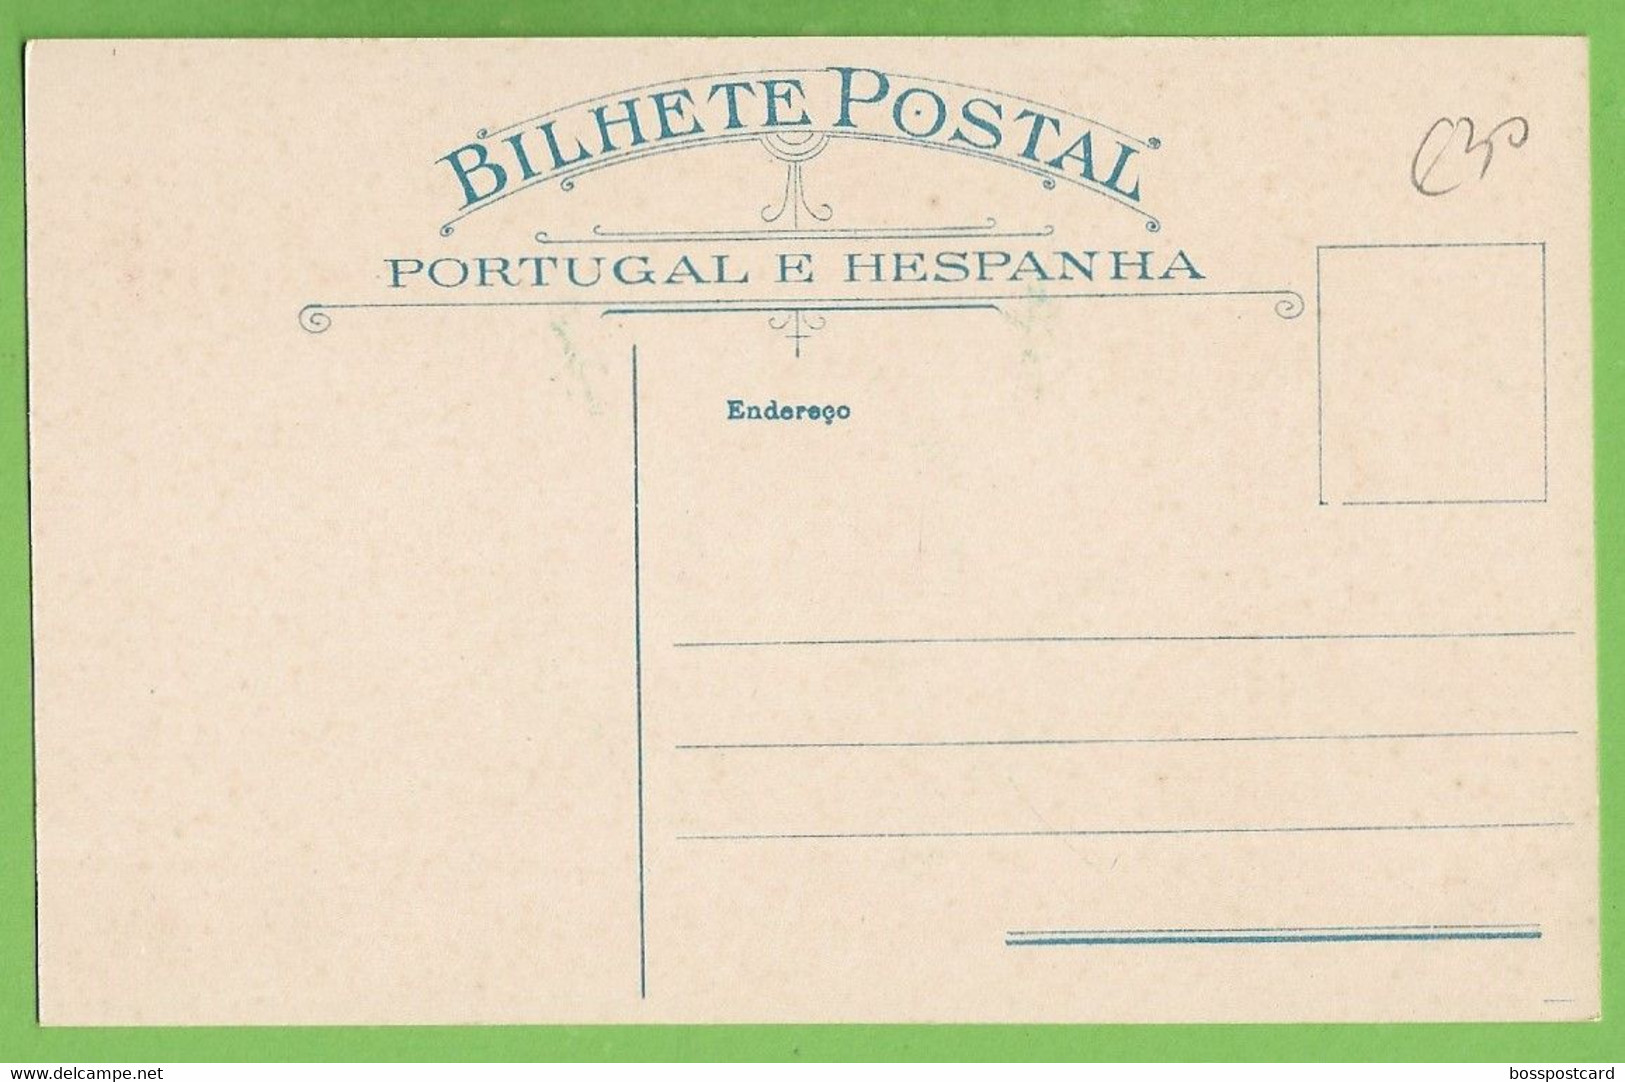 Monarquia - Armas Da República Portuguesa, Projecto De Alexandre Fontes - Bandeira Nacional - Portugal - Histoire